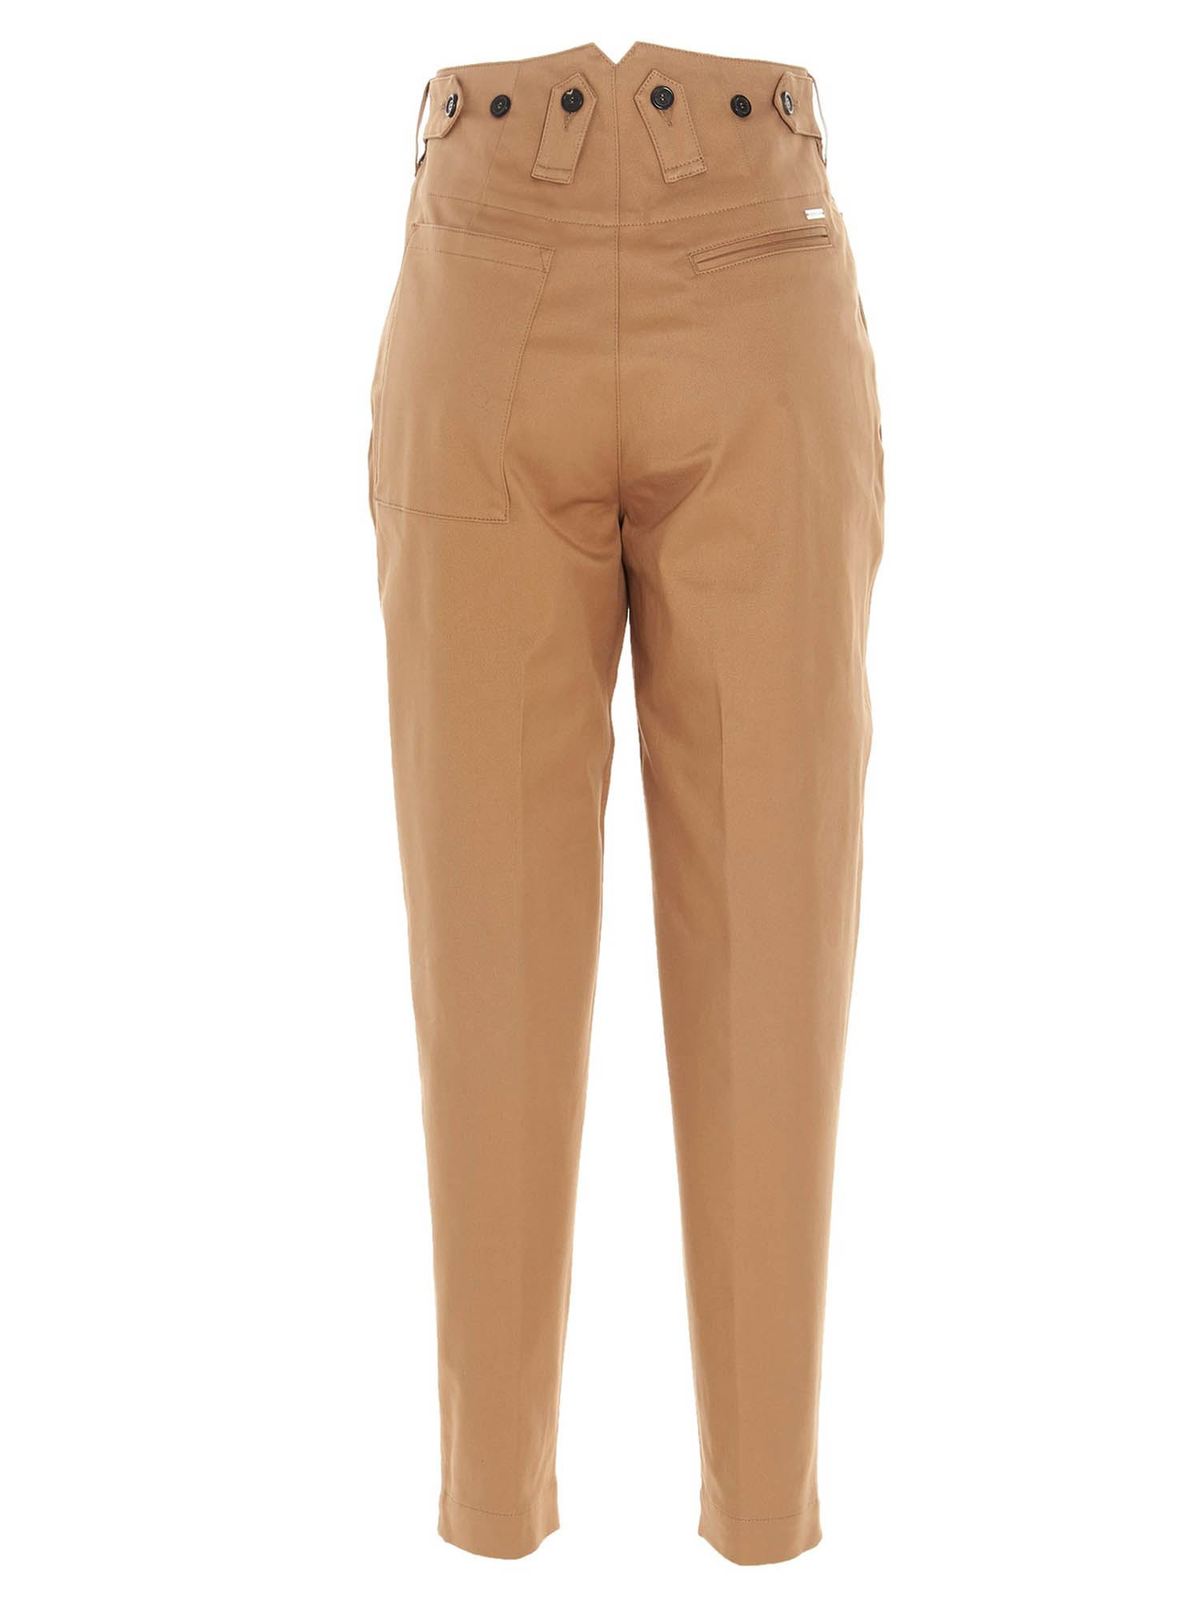 Camel Brown Trousers  Buy Camel Brown Trousers online in India